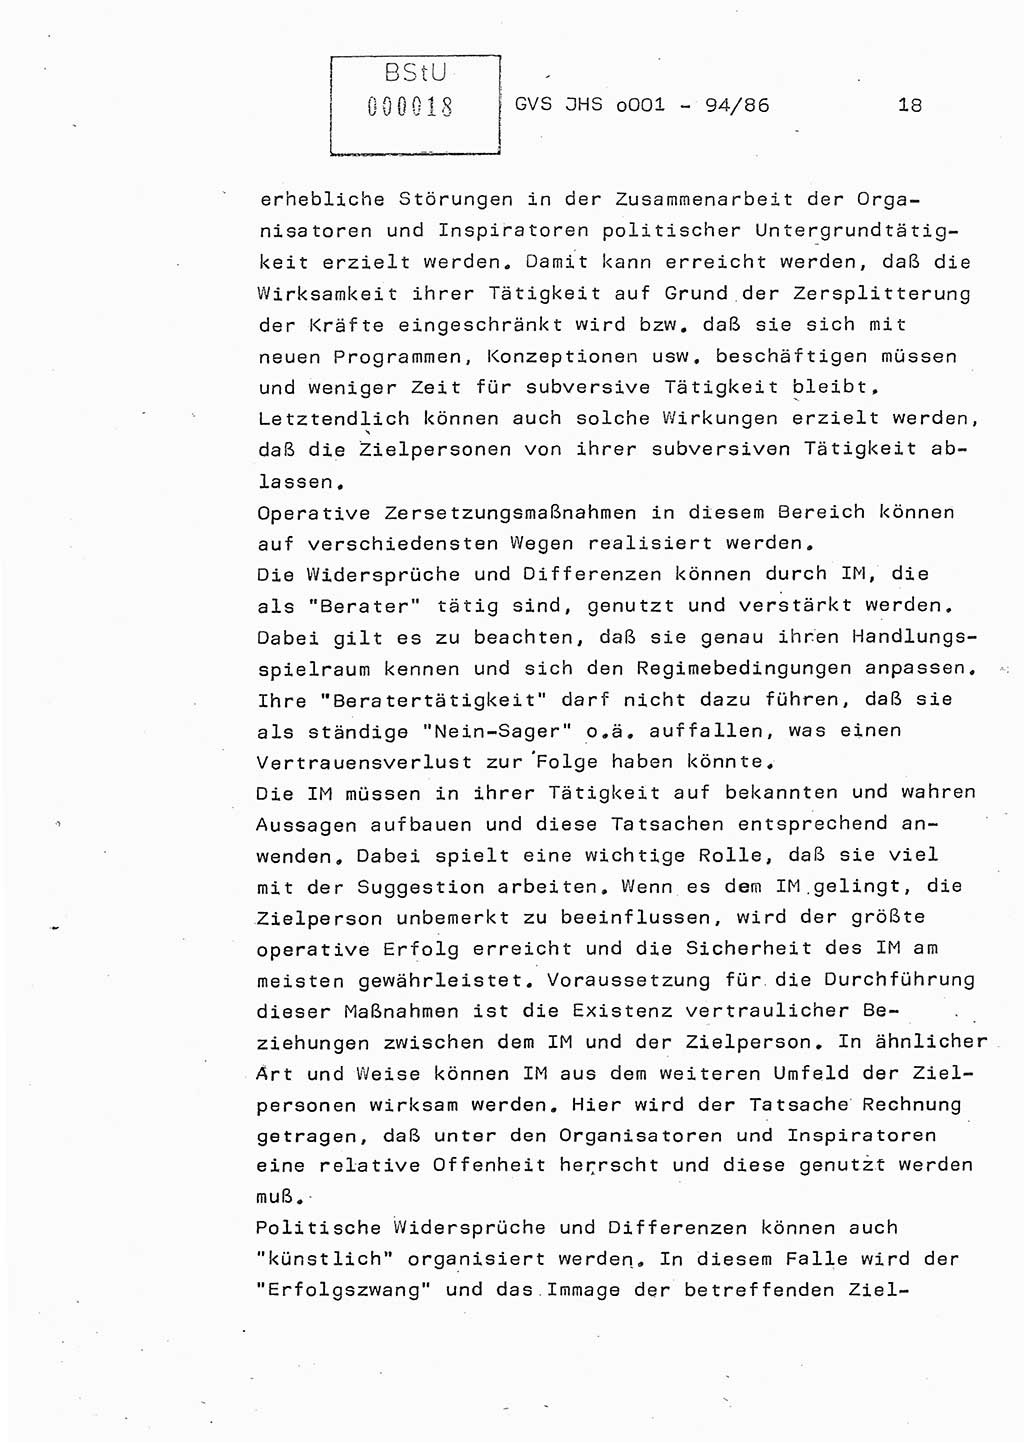 Diplomarbeit Oberleutnant Volkmar Pechmann (HA ⅩⅩ/5), Ministerium für Staatssicherheit (MfS) [Deutsche Demokratische Republik (DDR)], Juristische Hochschule (JHS), Geheime Verschlußsache (GVS) o001-94/86, Potsdam 1986, Blatt 18 (Dipl.-Arb. MfS DDR JHS GVS o001-94/86 1986, Bl. 18)